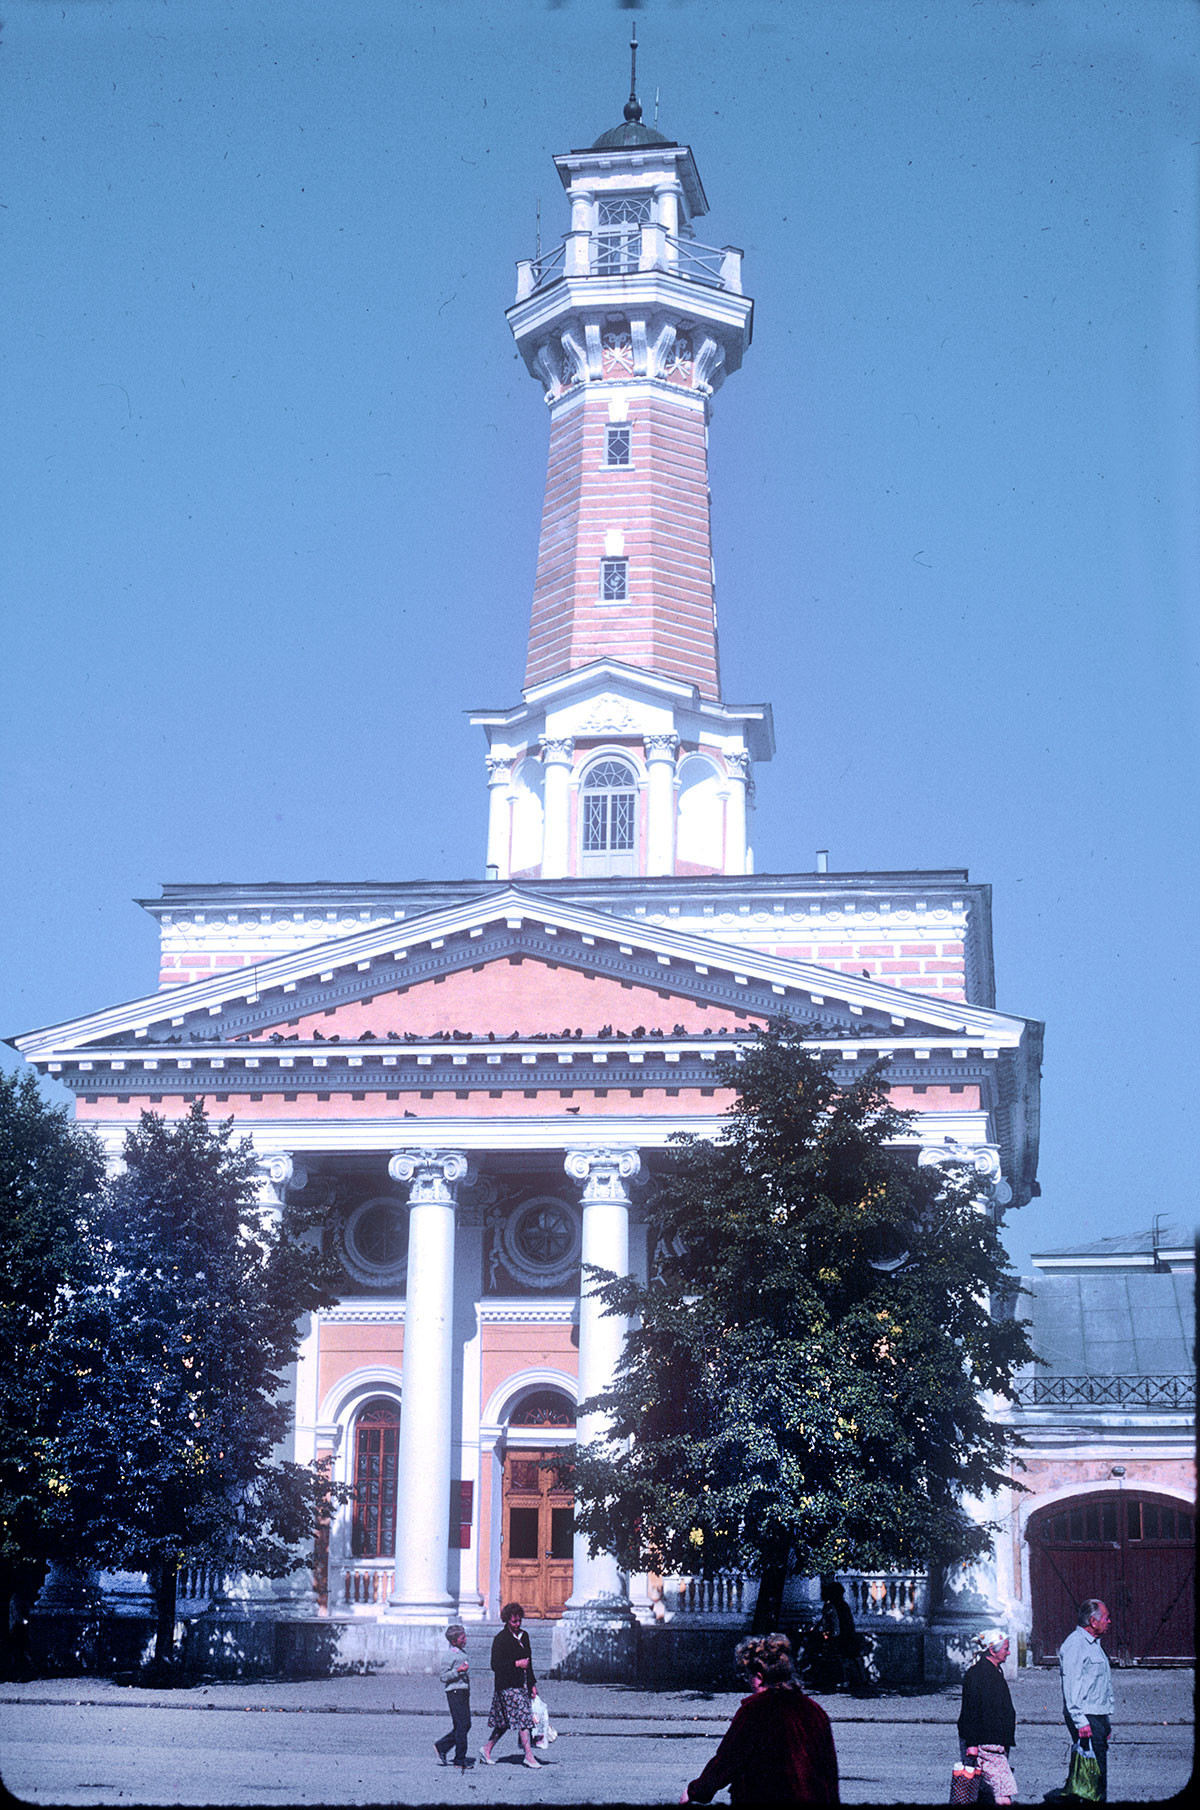 Požarni stolp in postaja, Susaninov trg. 22. avgust 1988
